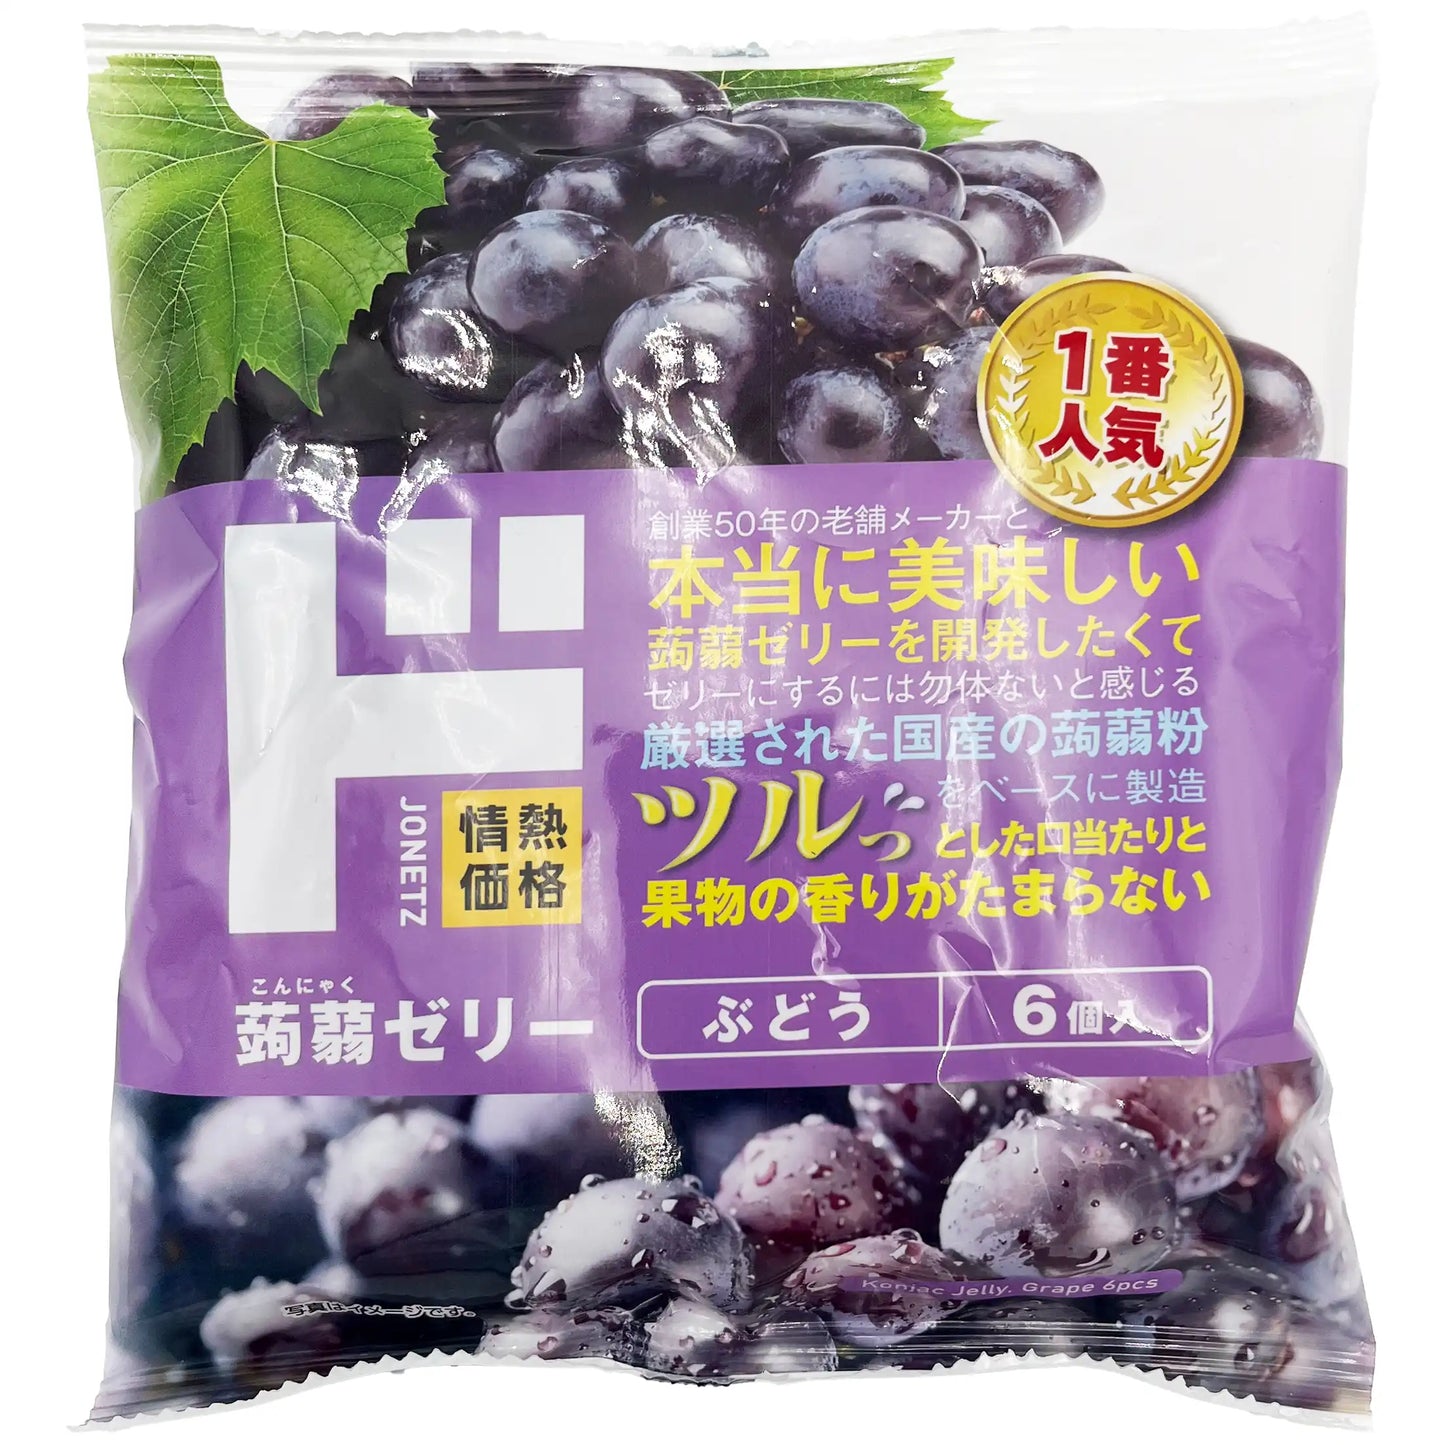 Jonetz Konjac Jelly Grape Flavor 6 Piece 4.23 oz